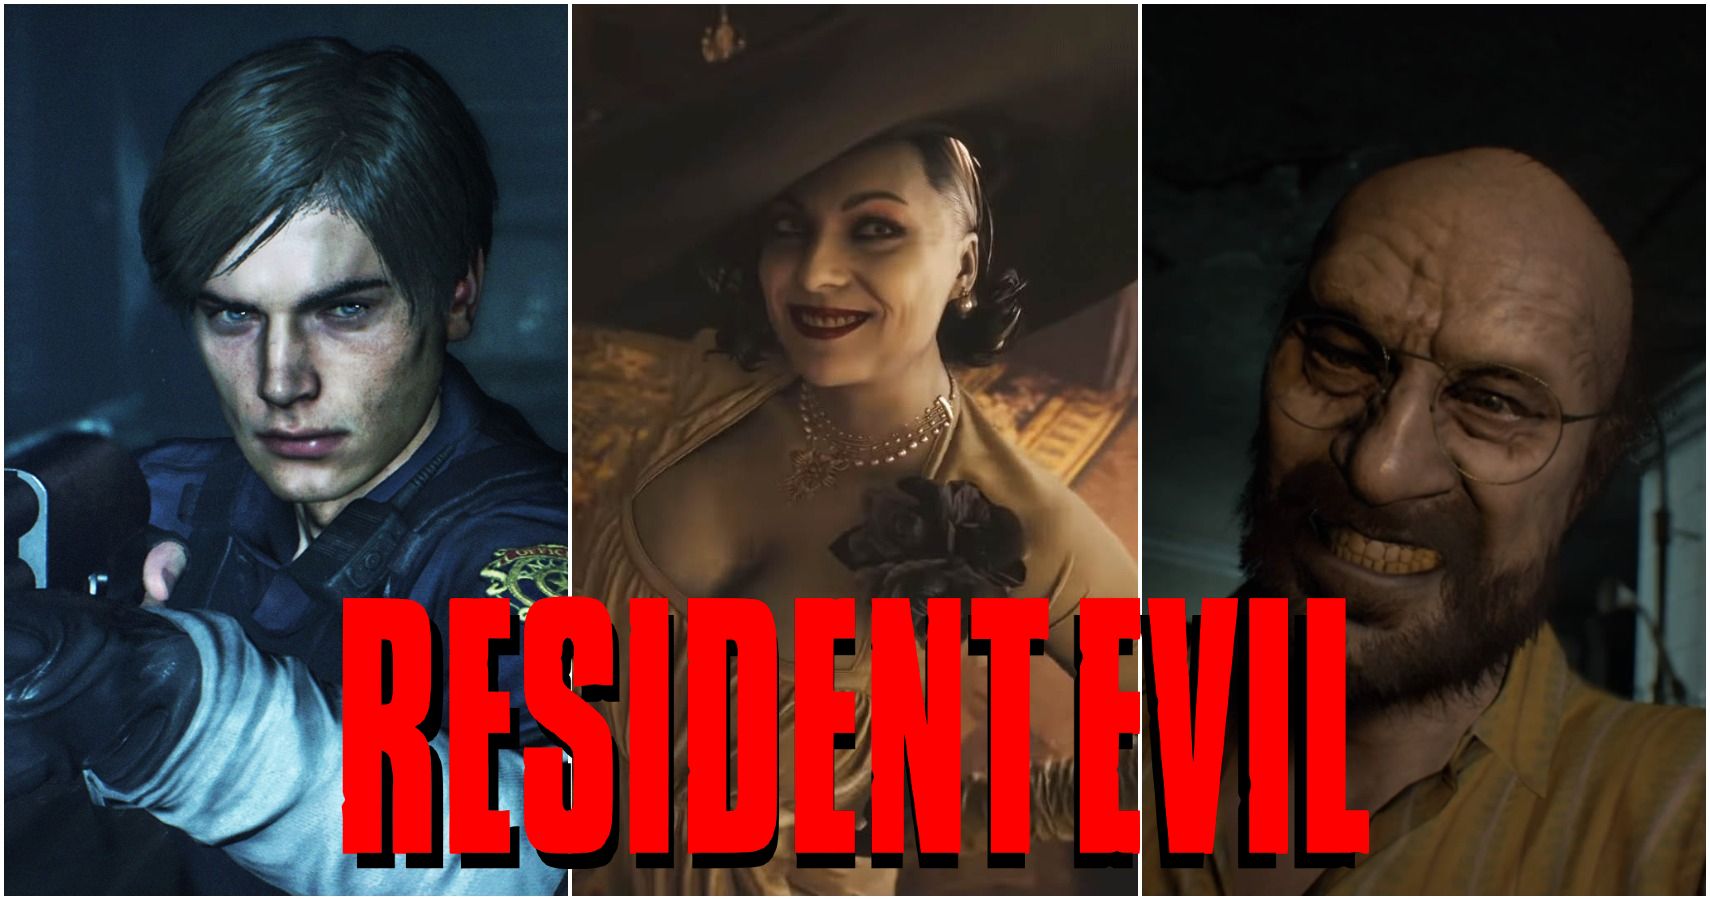 Claire Redfield face model RE2R  Resident evil girl, Resident